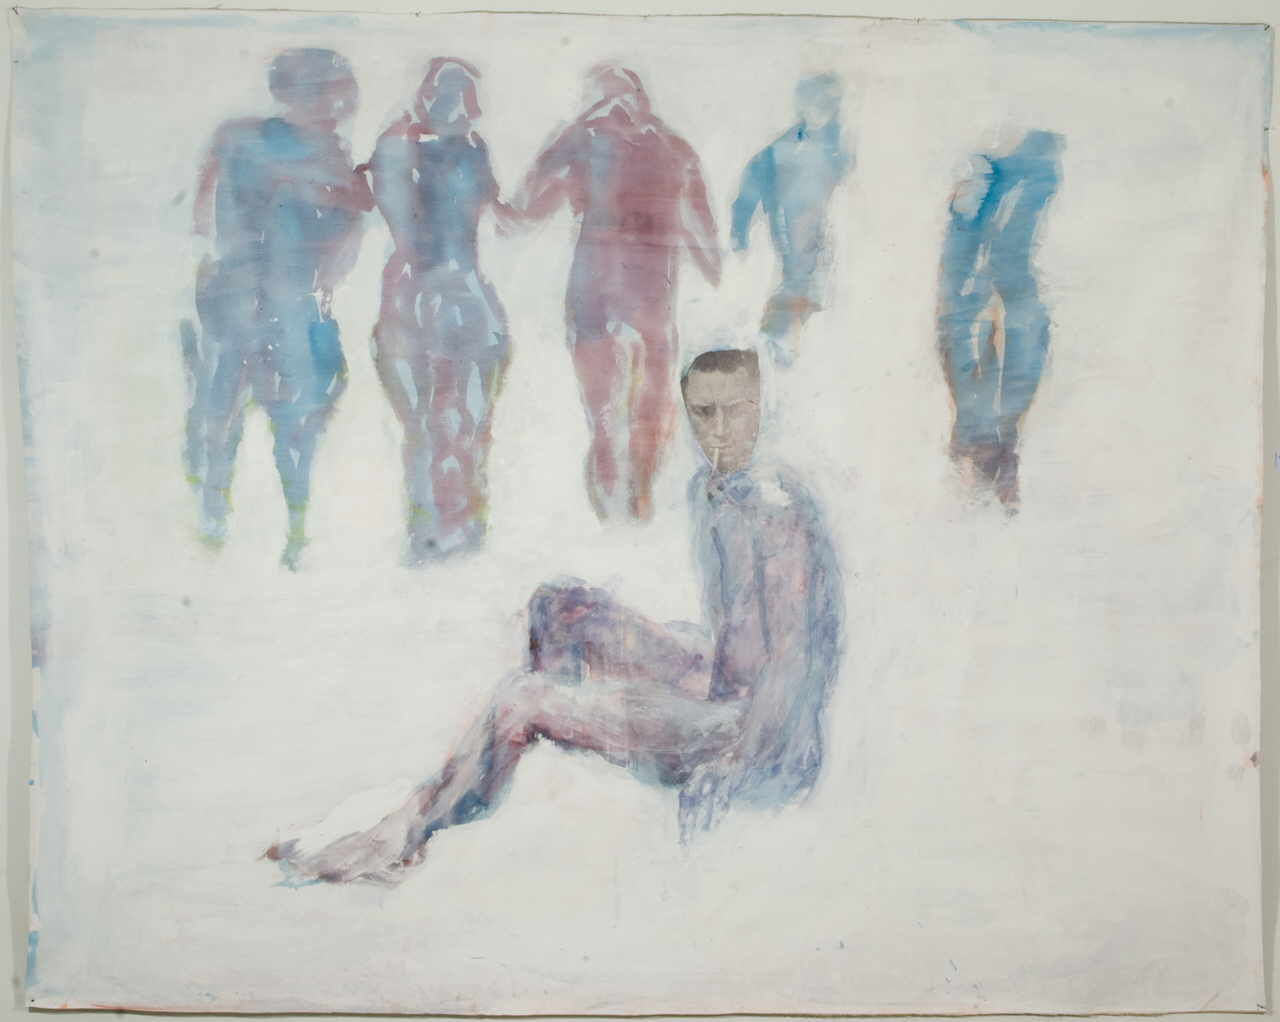 Kerschbaumer Martha C. 
"Mein Reich ist von dieser Welt", 2007
mixed media / canvas
210 x 270 cm